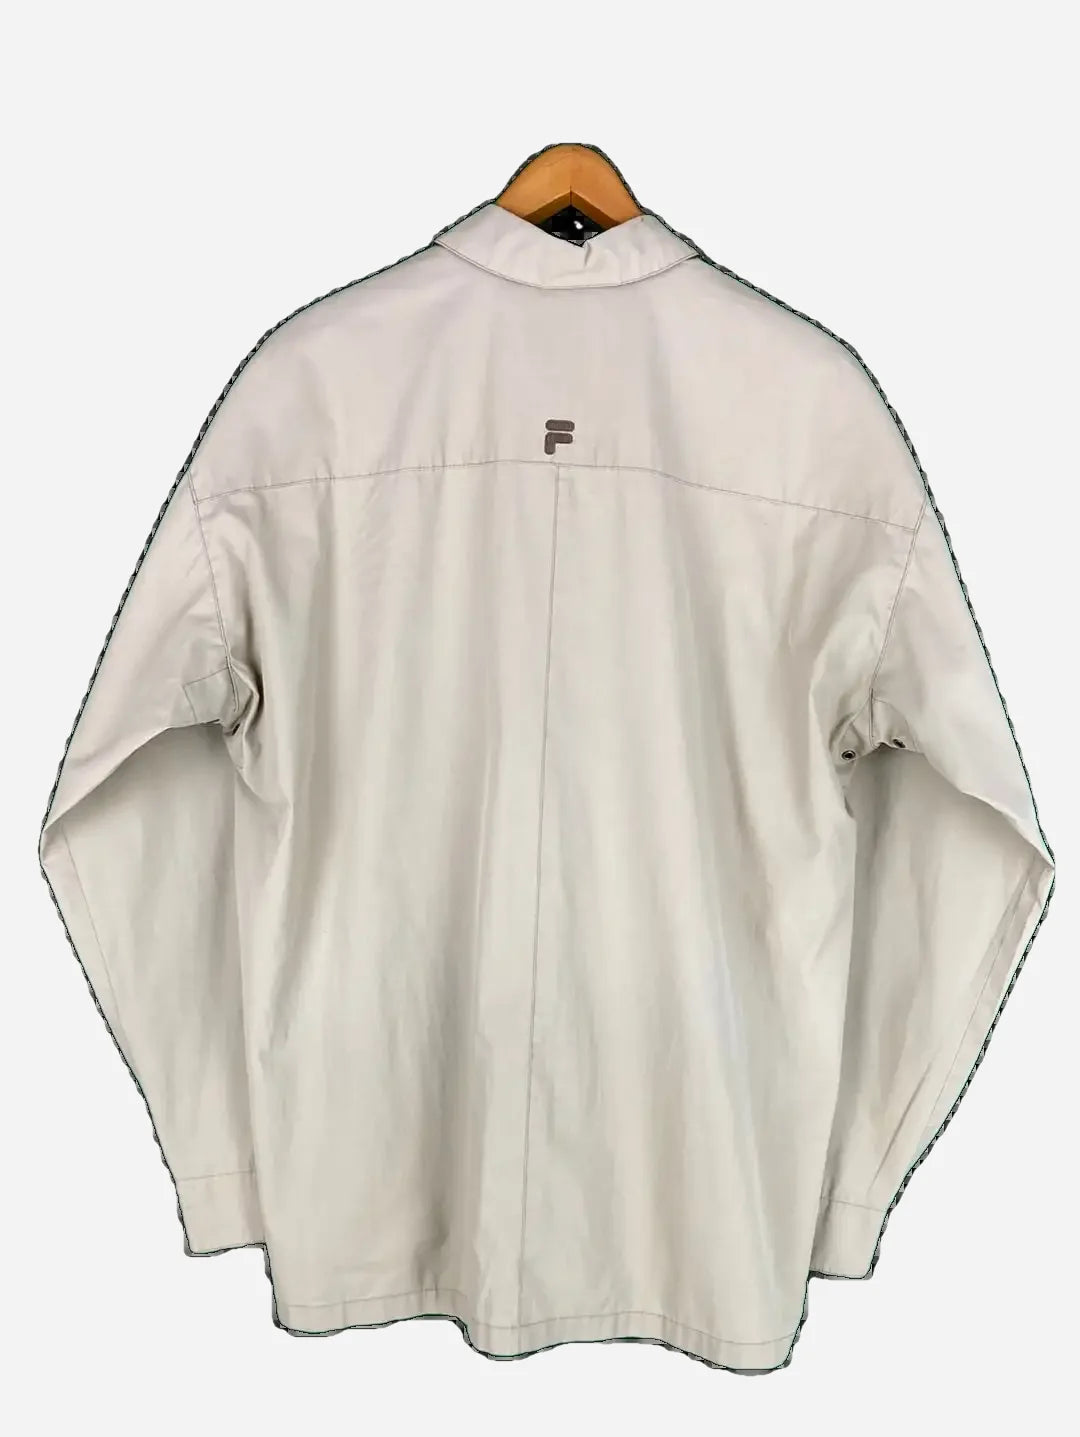 Fila transition jacket (L)